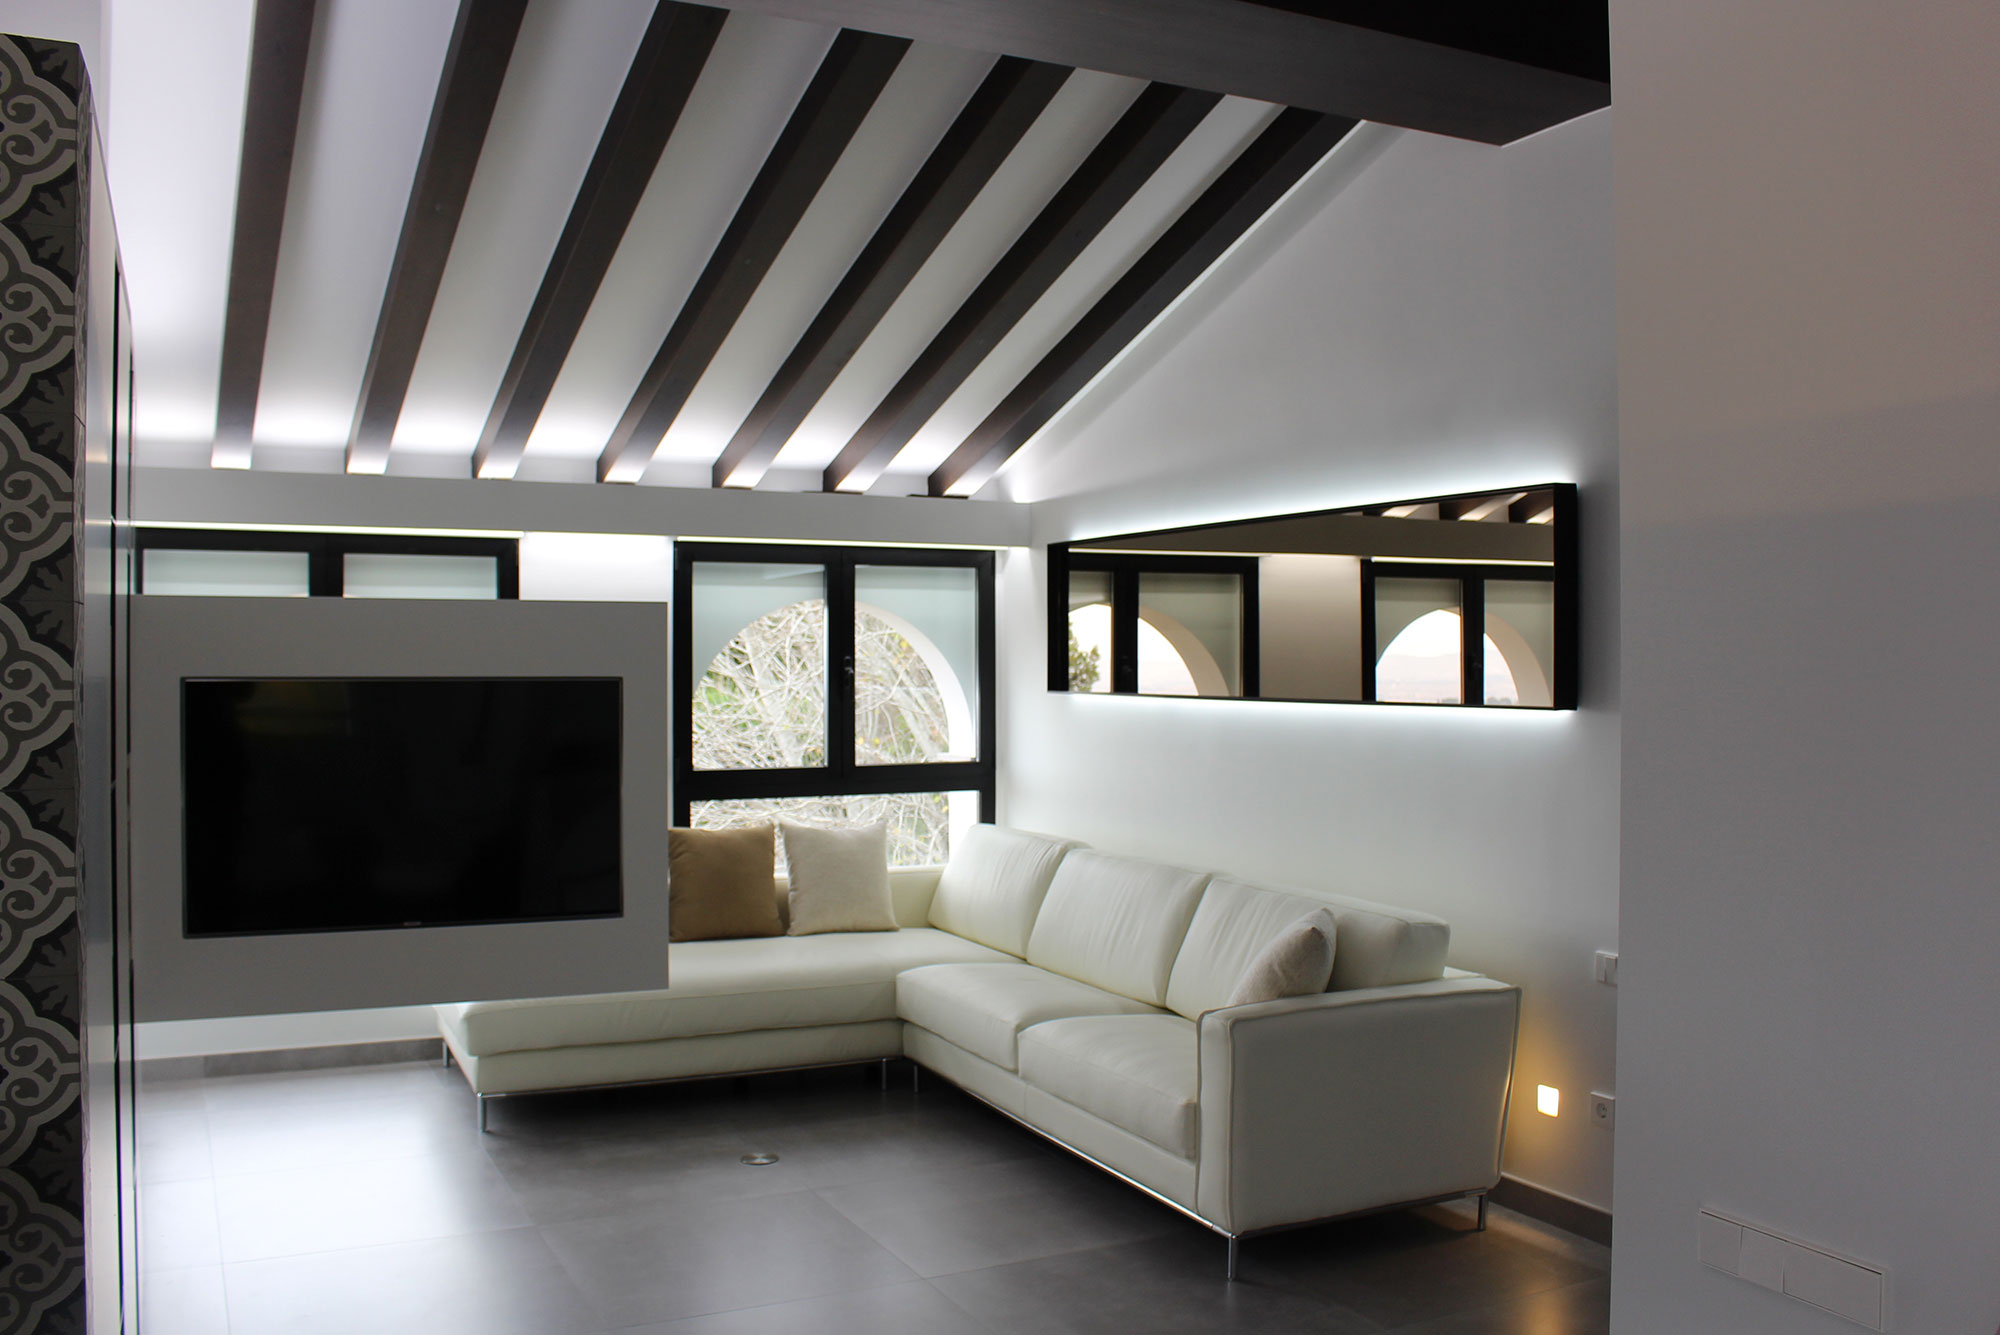 proyecto interiorismo masia ibiza interiorista Valencia diseño mobiliario personalizado fabricación a medida